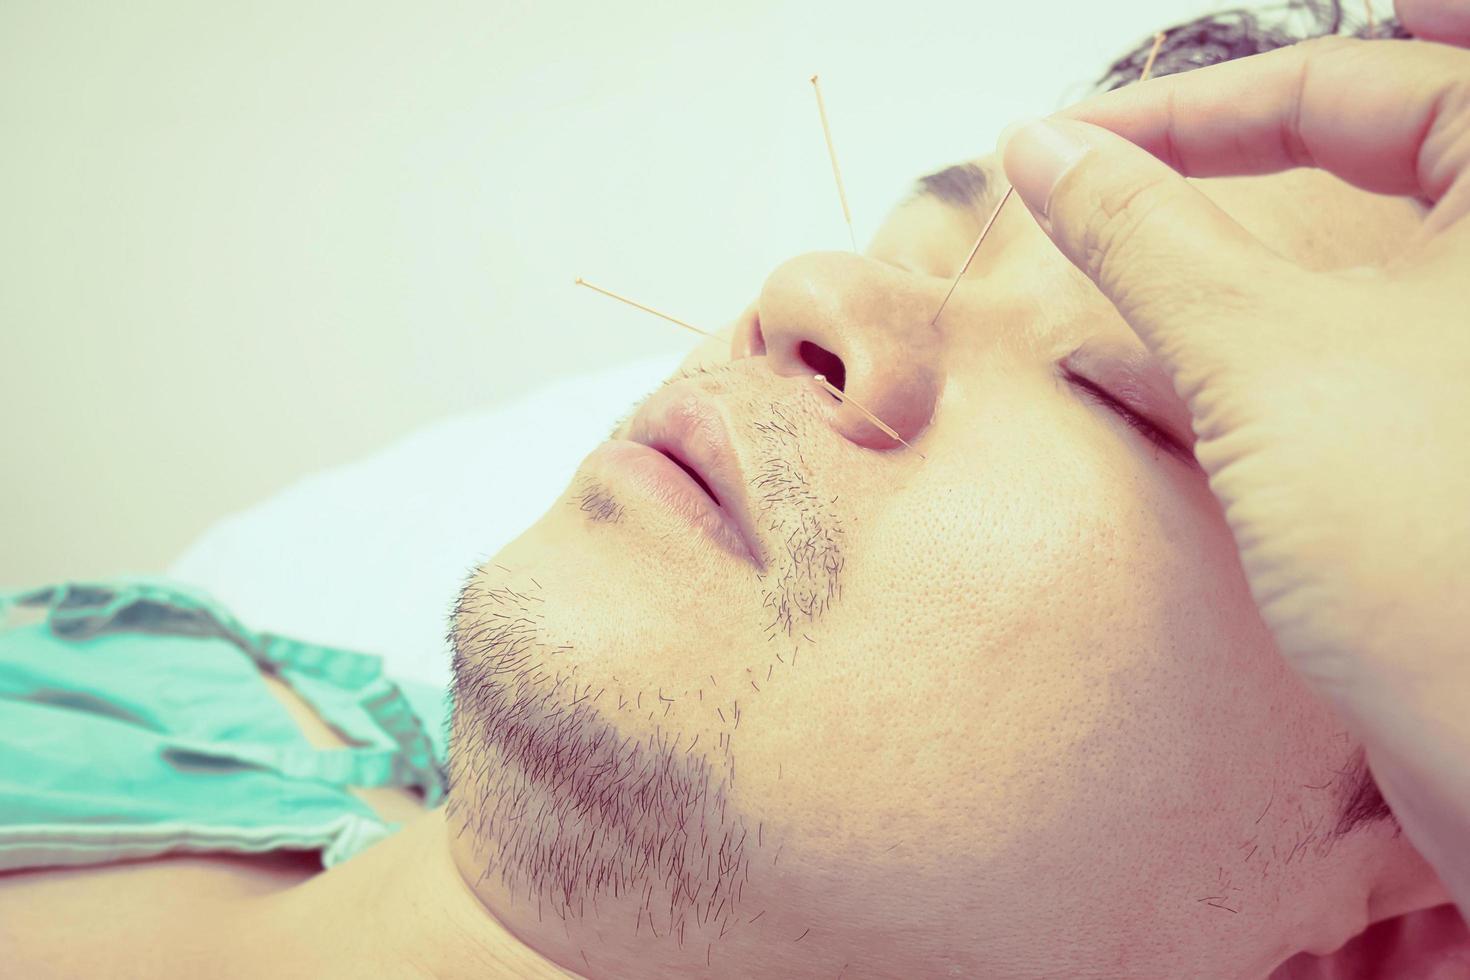 photo de style vintage d'un homme asiatique ciblé sélectif reçoit un traitement d'acupuncture